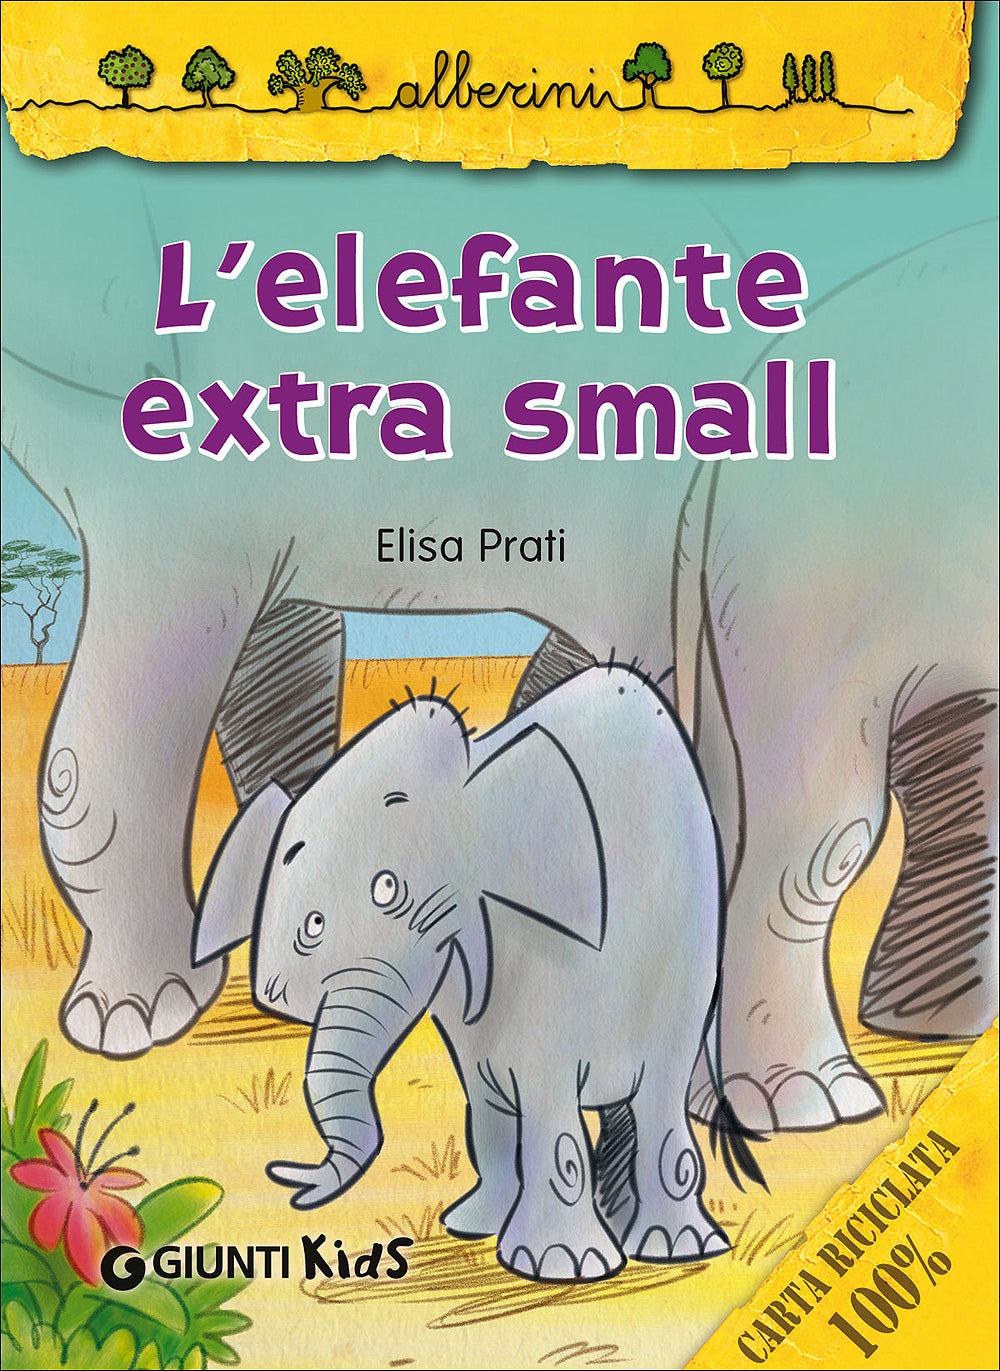 L'elefante extra small